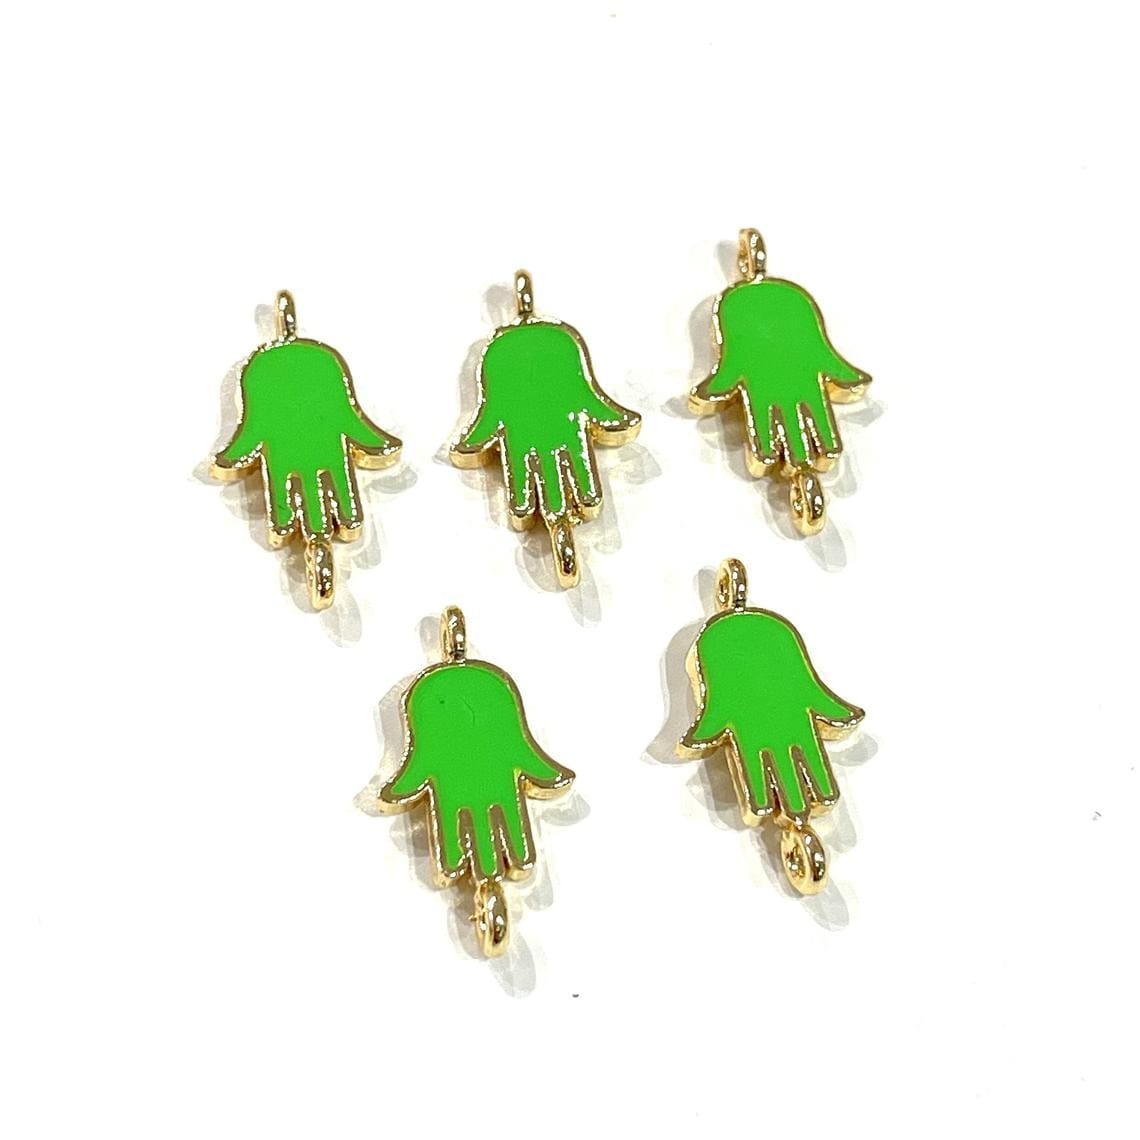 Altın Kaplama Mineli Mini Fatma Ana Eli Bileklik Aparatı - Neon Yeşil